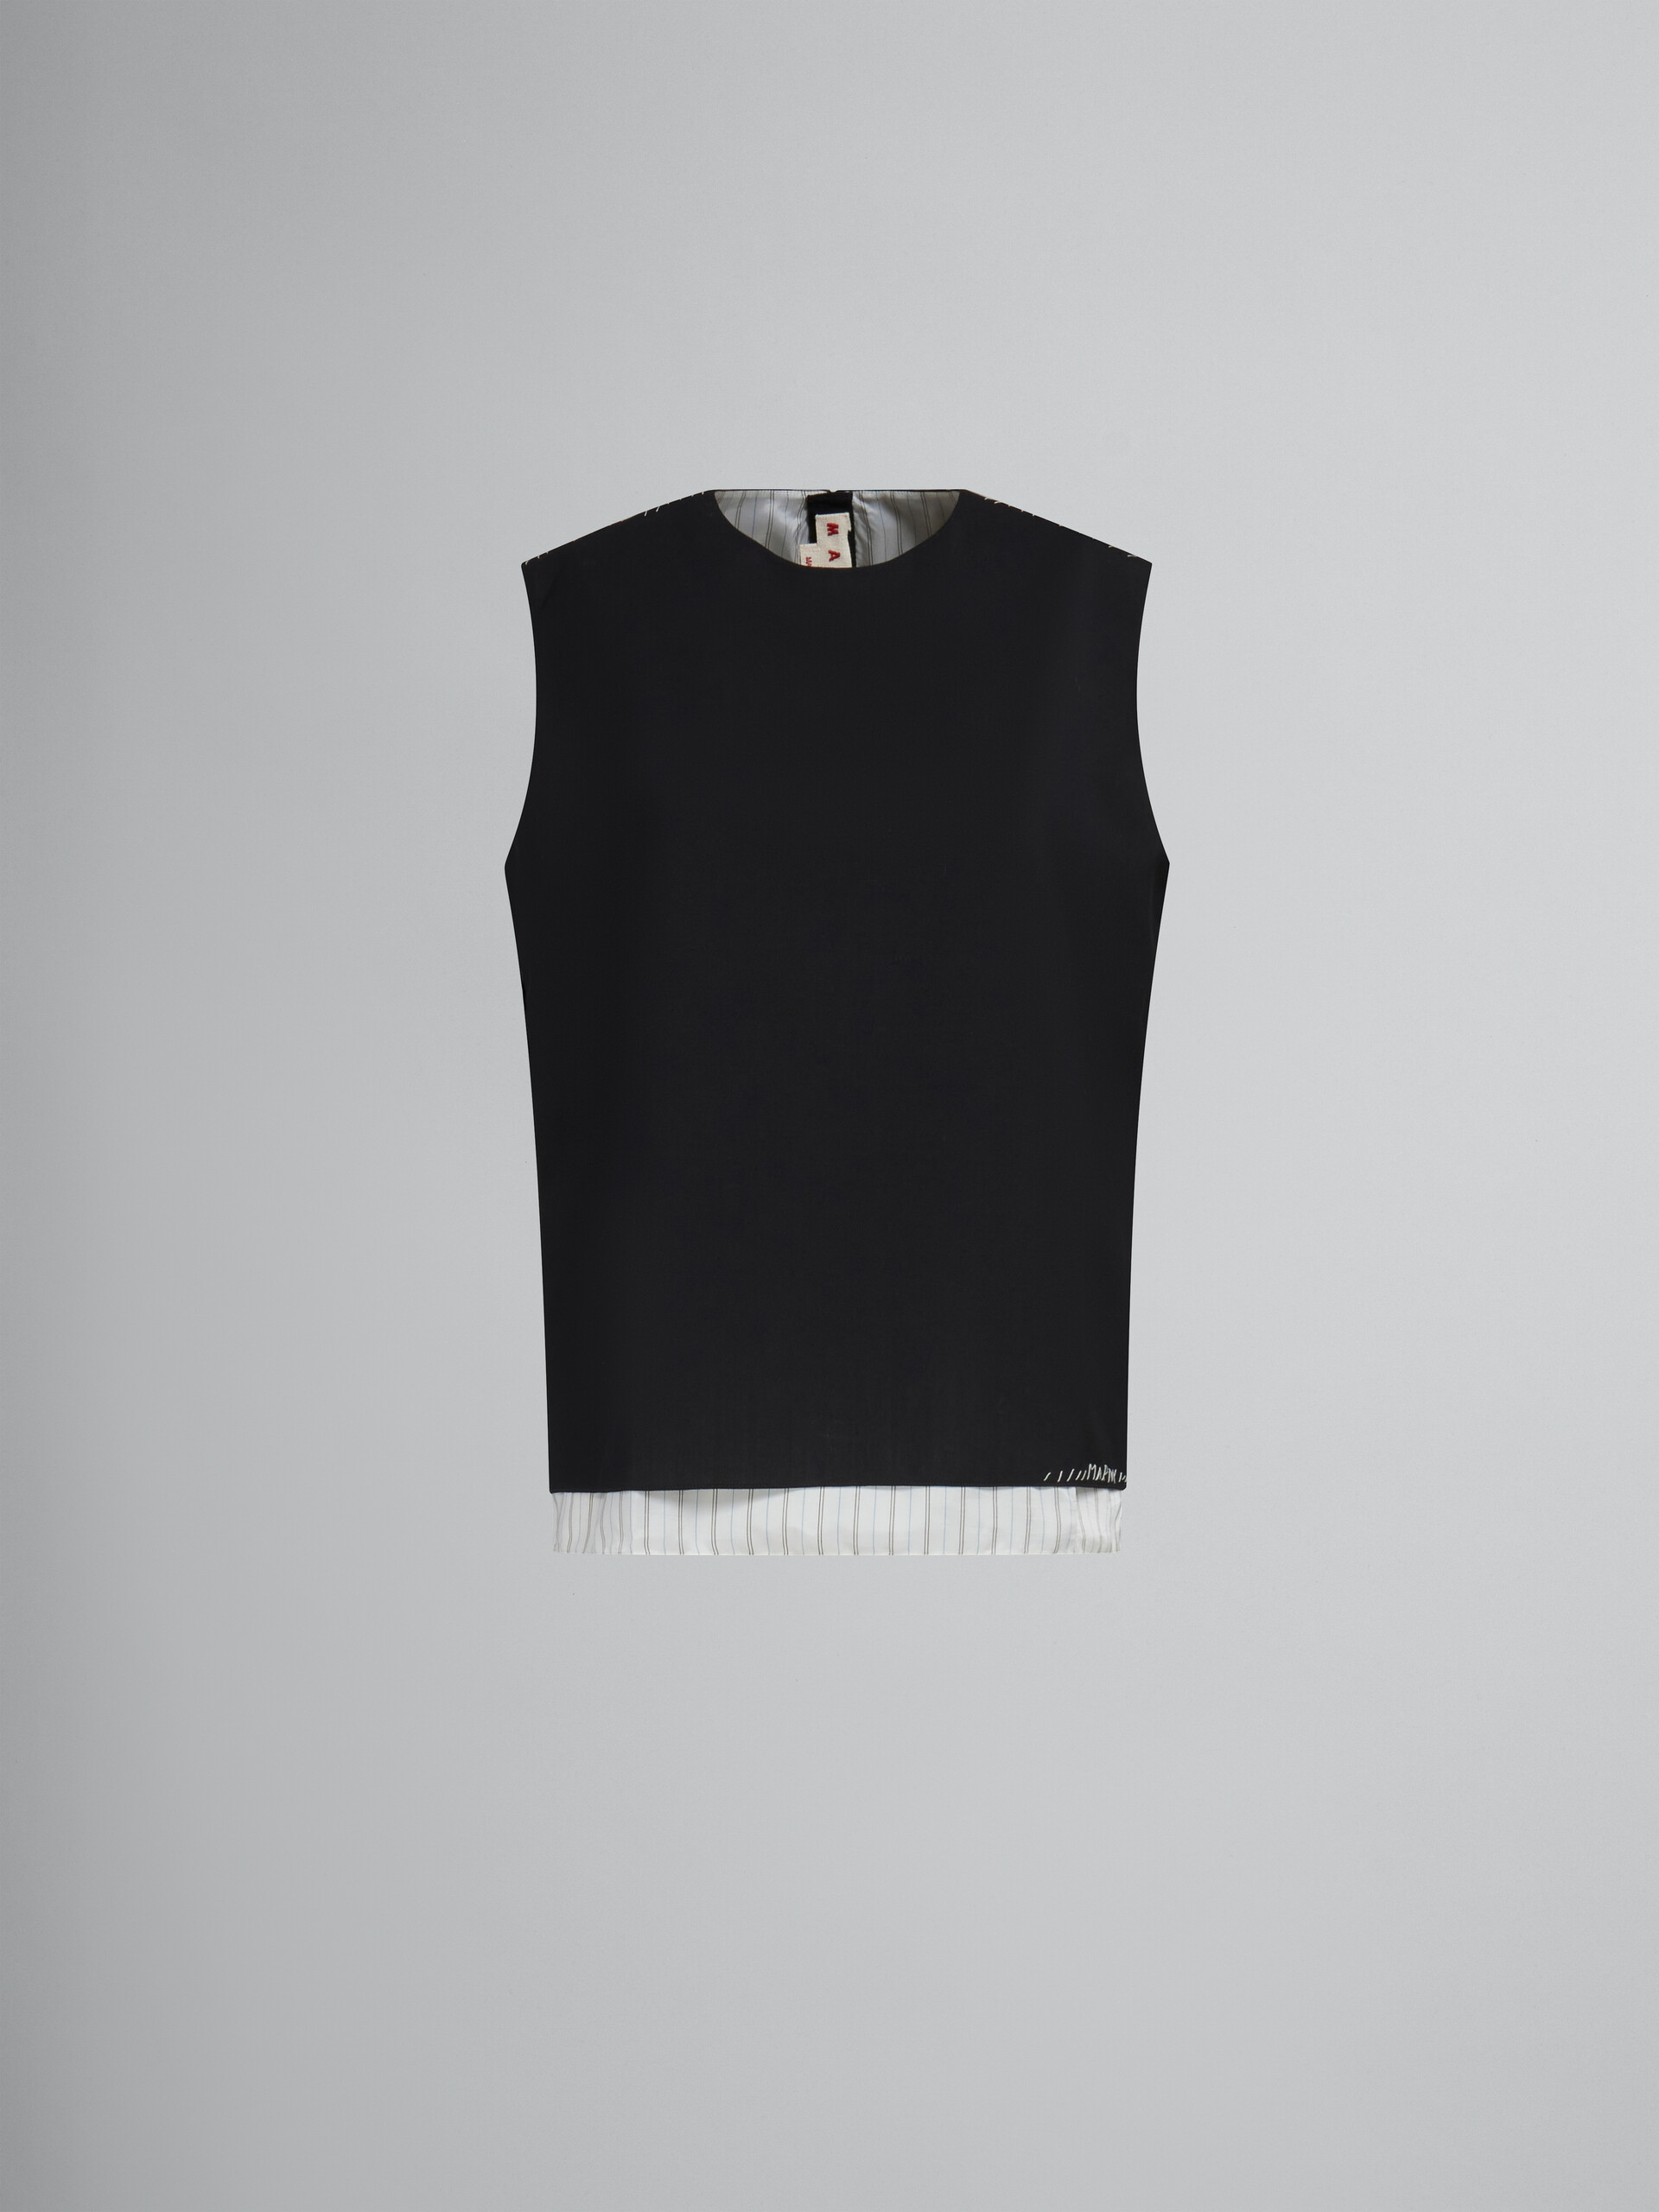 Haut sans manches en laine tropicale noire avec effet raccommodé Marni - Chemises - Image 1